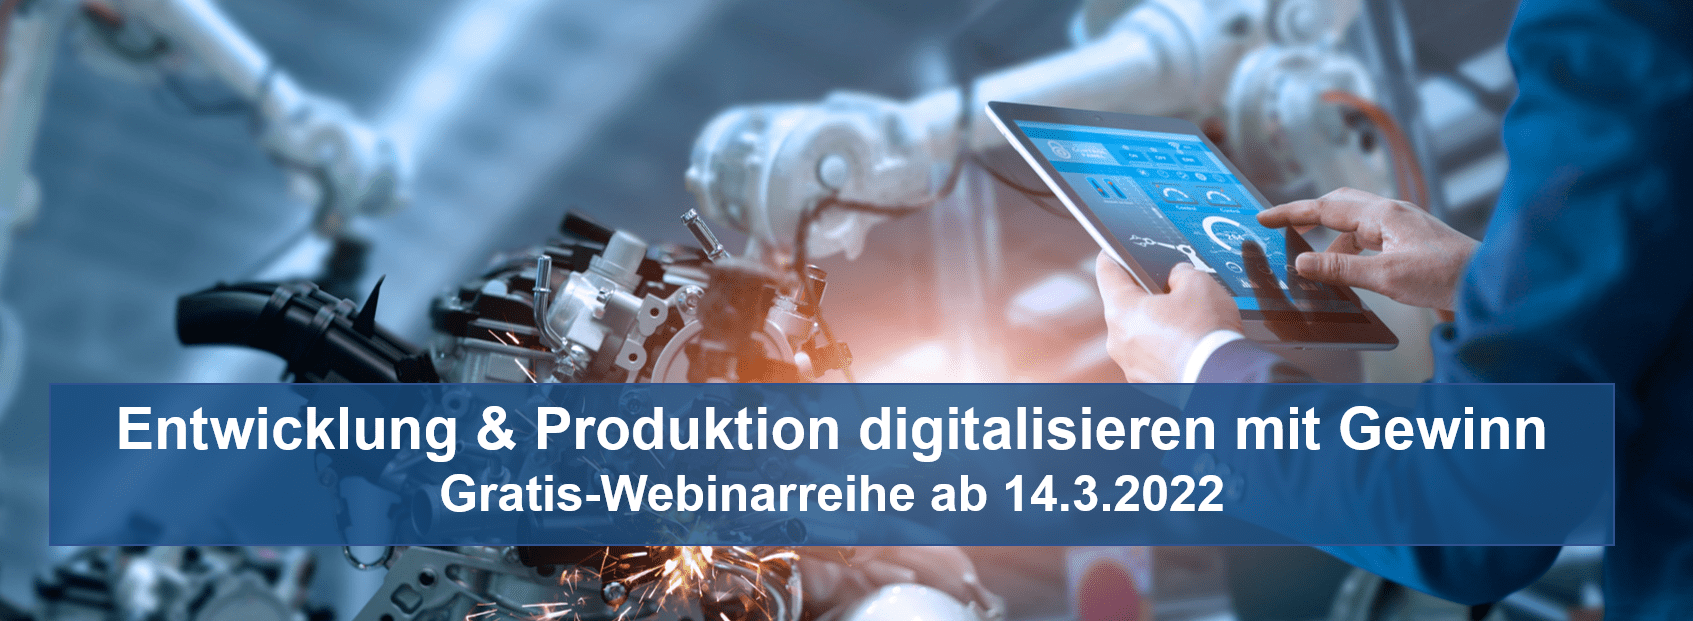 Entwicklung & Produktion digitalisieren mit Gewinn – Gratis-Webinarreihe ab 14.3.2022